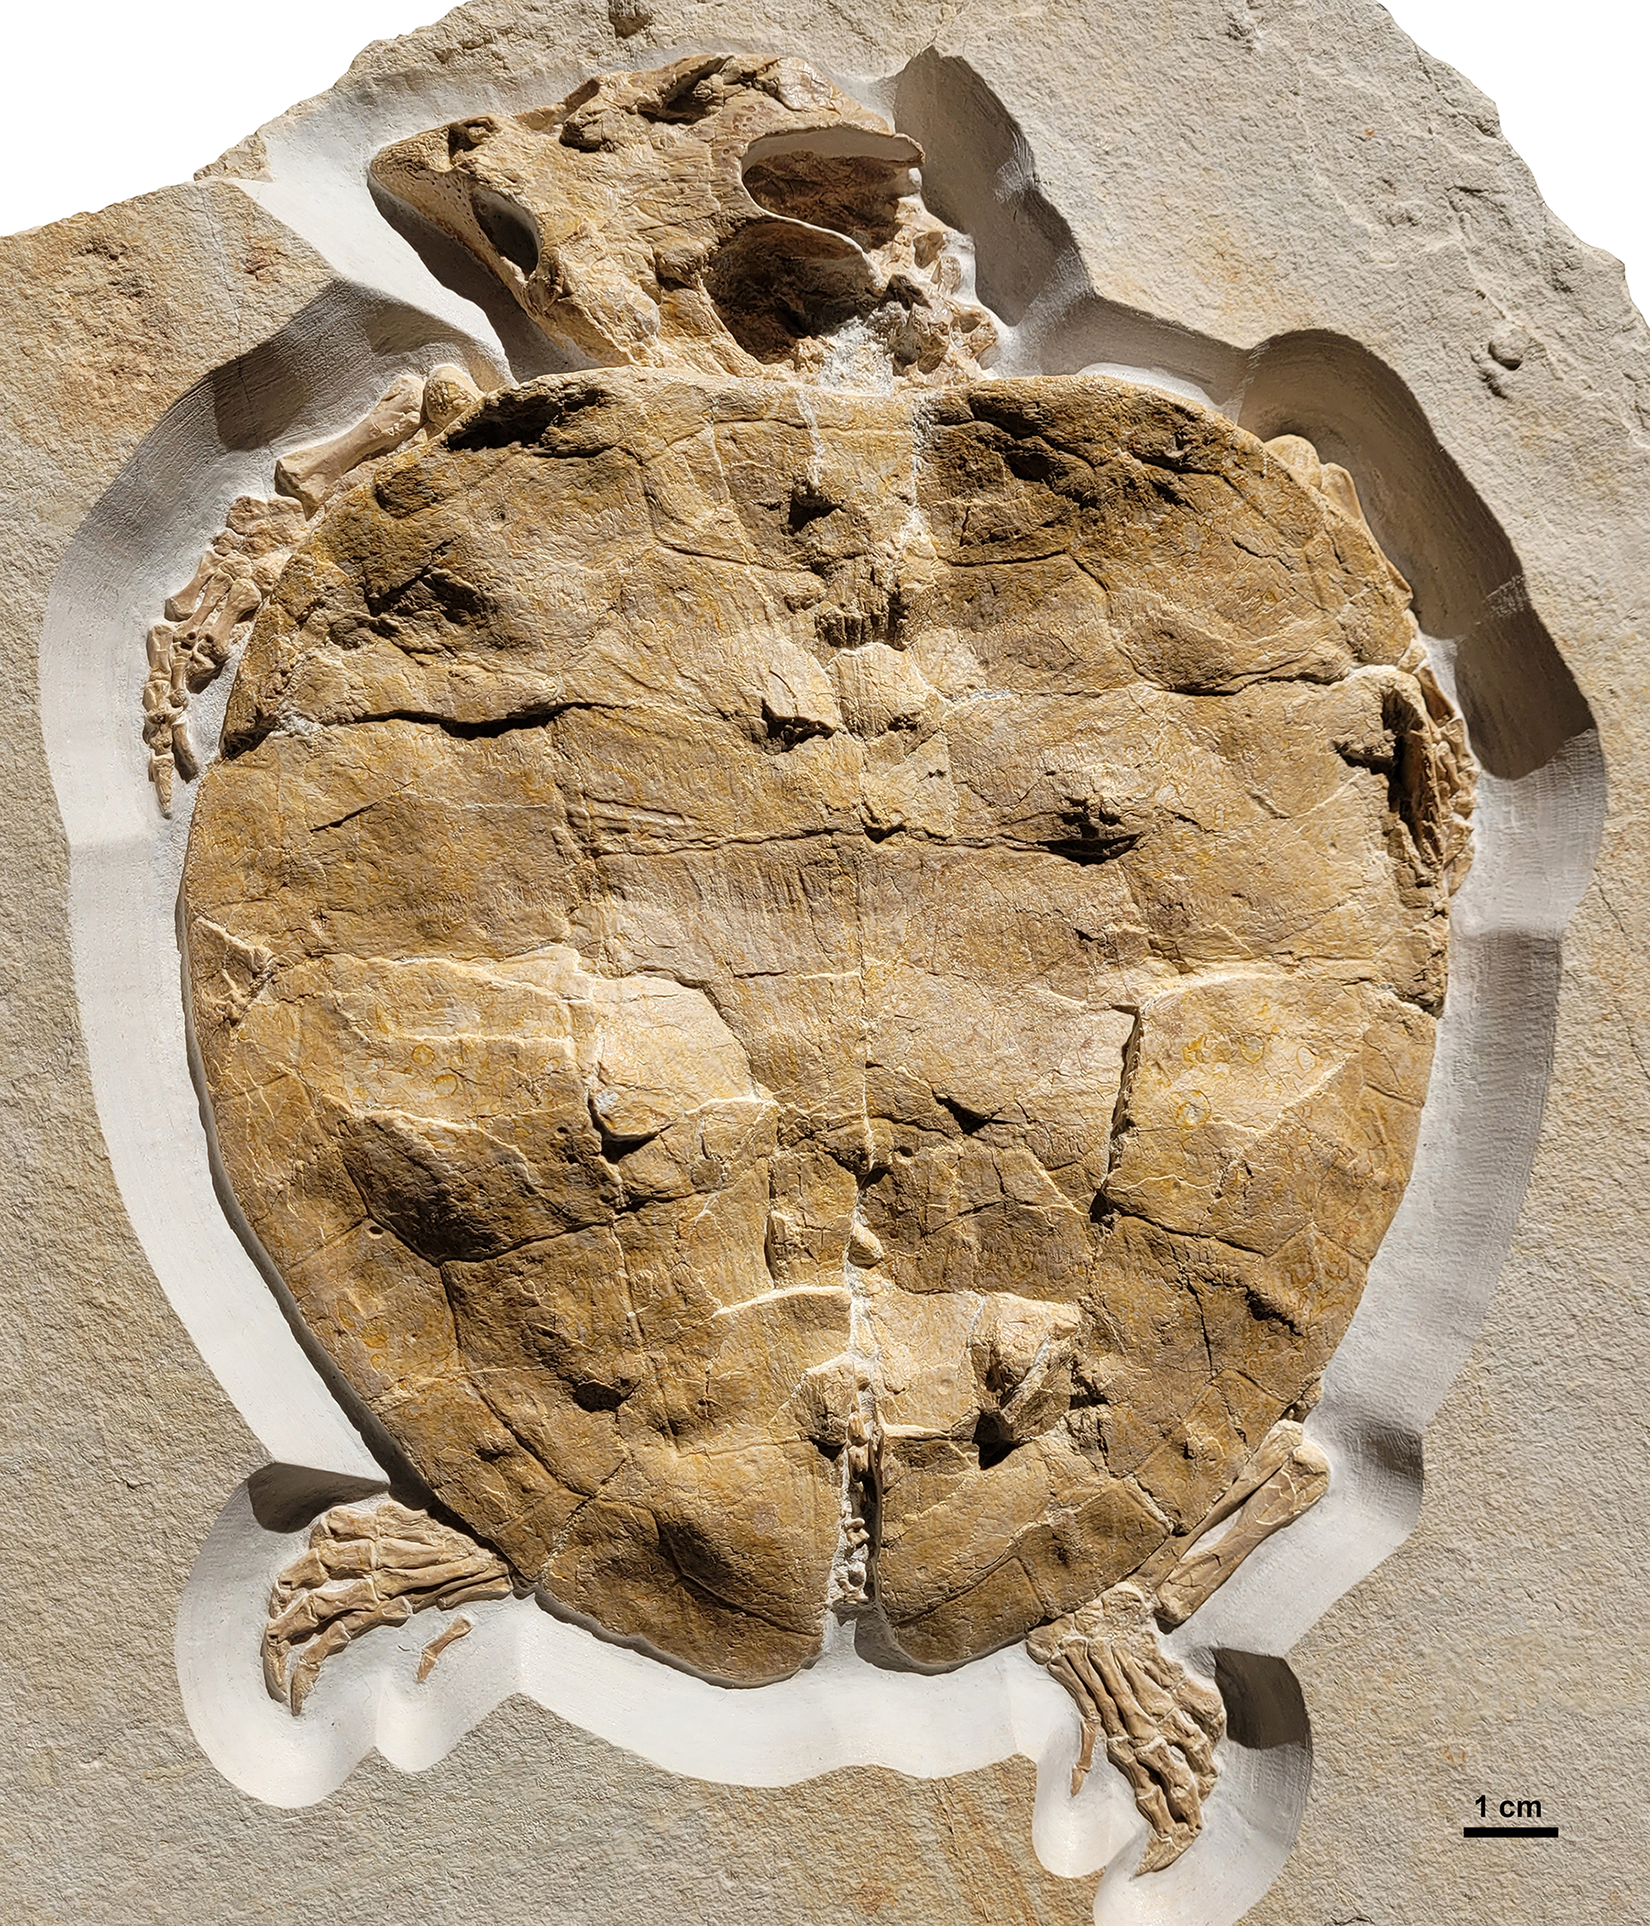 Découverte : cette tortue marine dotée de « doigts » évoluait le long des côtes, il y a 150 millions d’années